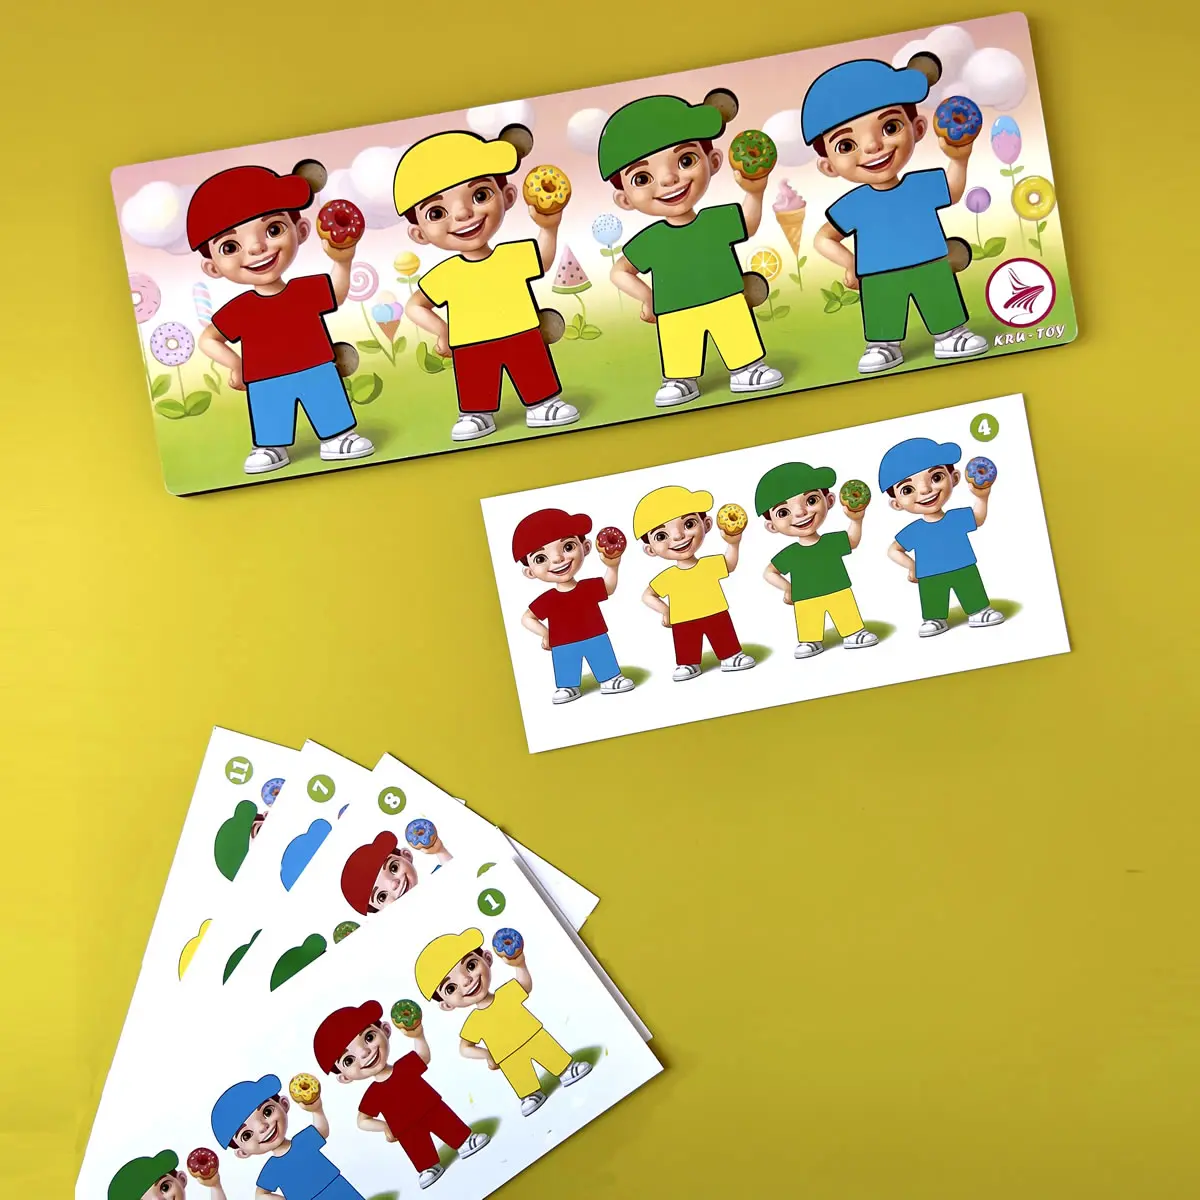 Дерев'янний пазл-сортер "Хлопчики з пончиками" - Розвиваюча гра для дітей